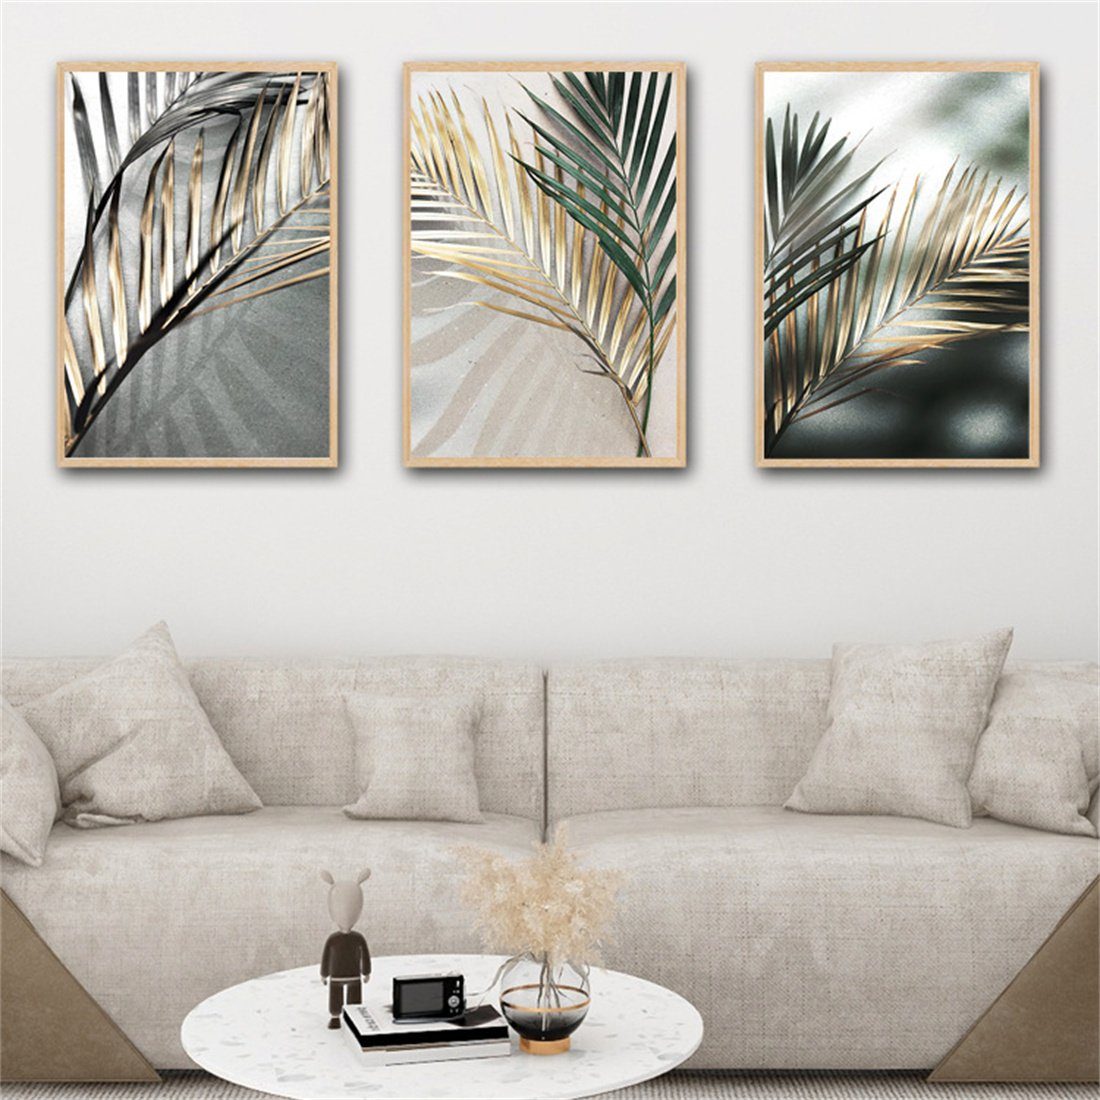 HOPPO~ Wandbild 3 dekorative Bildeinlagen mit goldenen und grünen Blättern, ungerahmt | Kunstdrucke